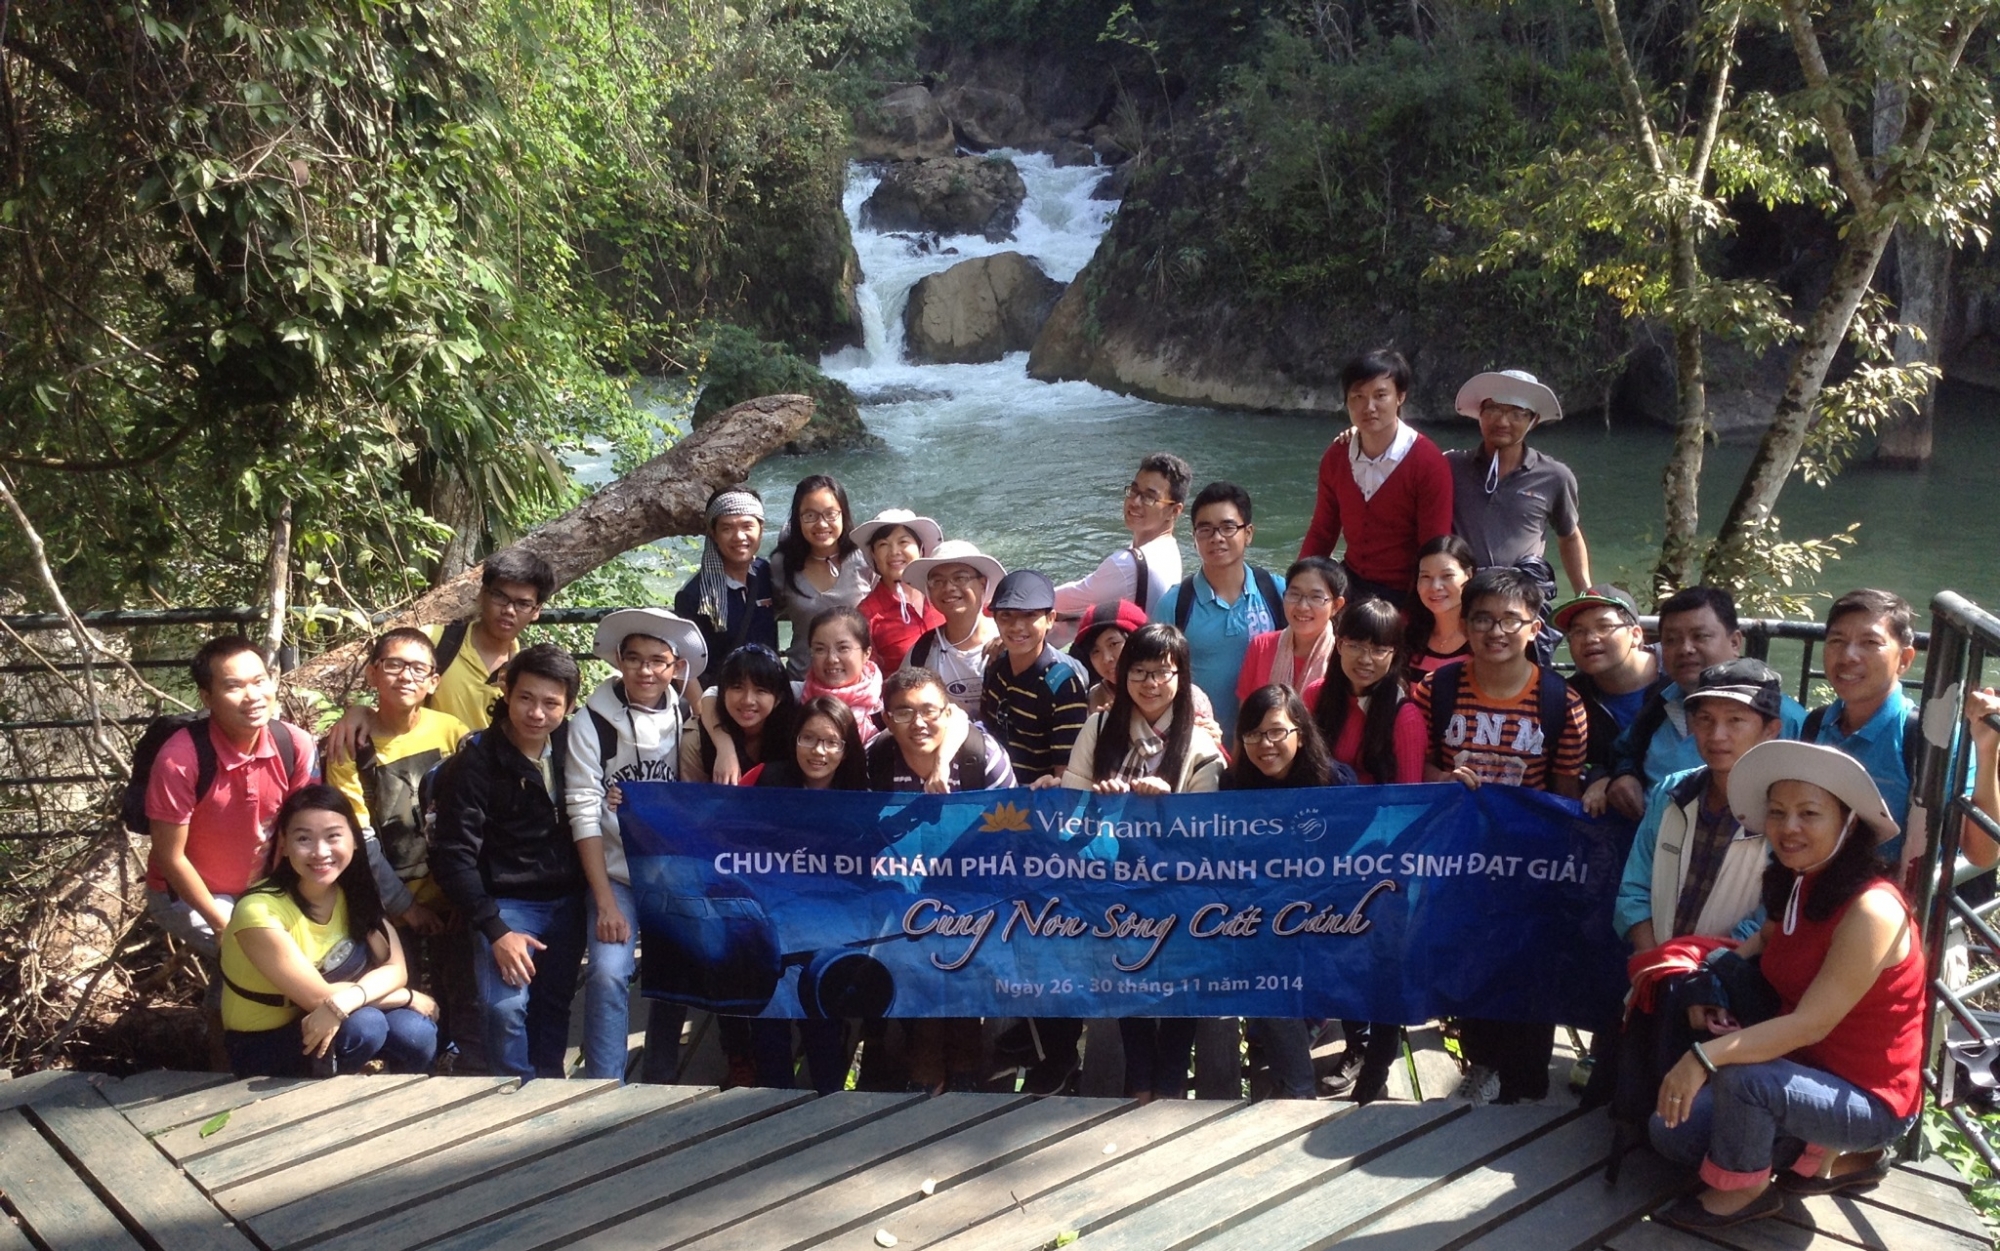 Cuộc thi “Cùng non sông cất cánh” và hành trình Về thăm Đông Bắc